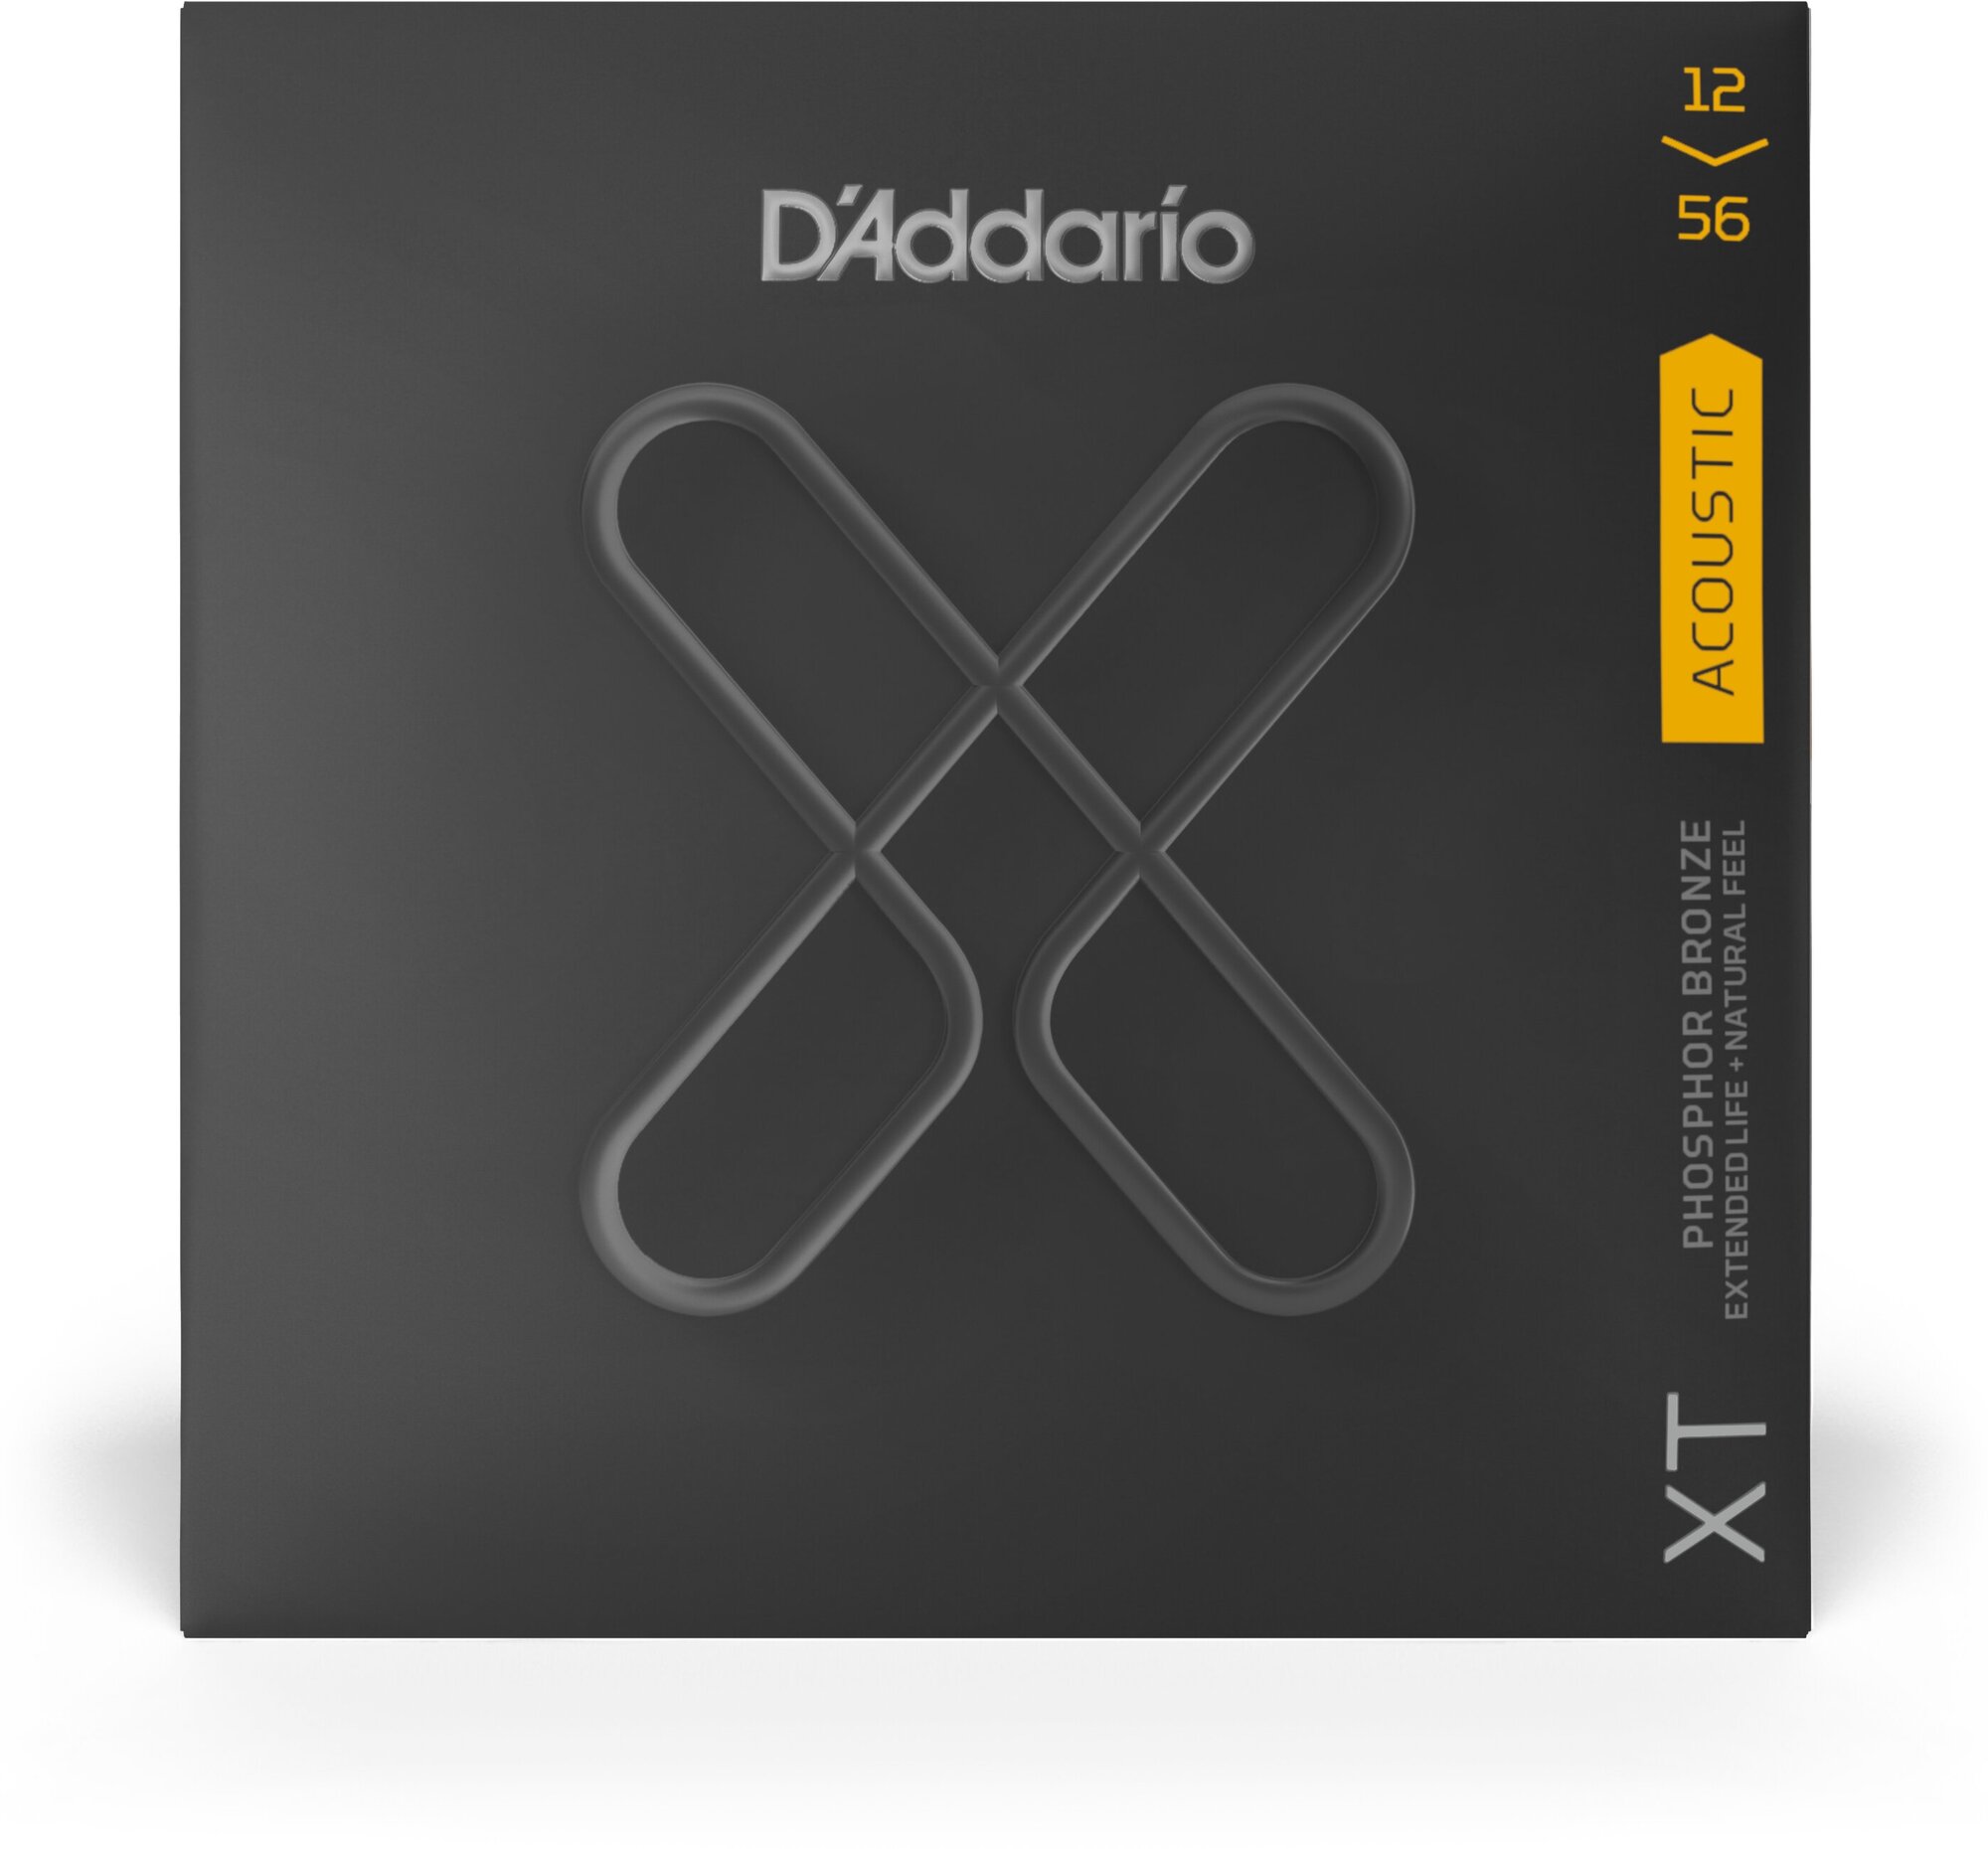 D'Addario XTAPB1256 струны для акустической гитары, фосфор/бронза,12-56, с покрытием